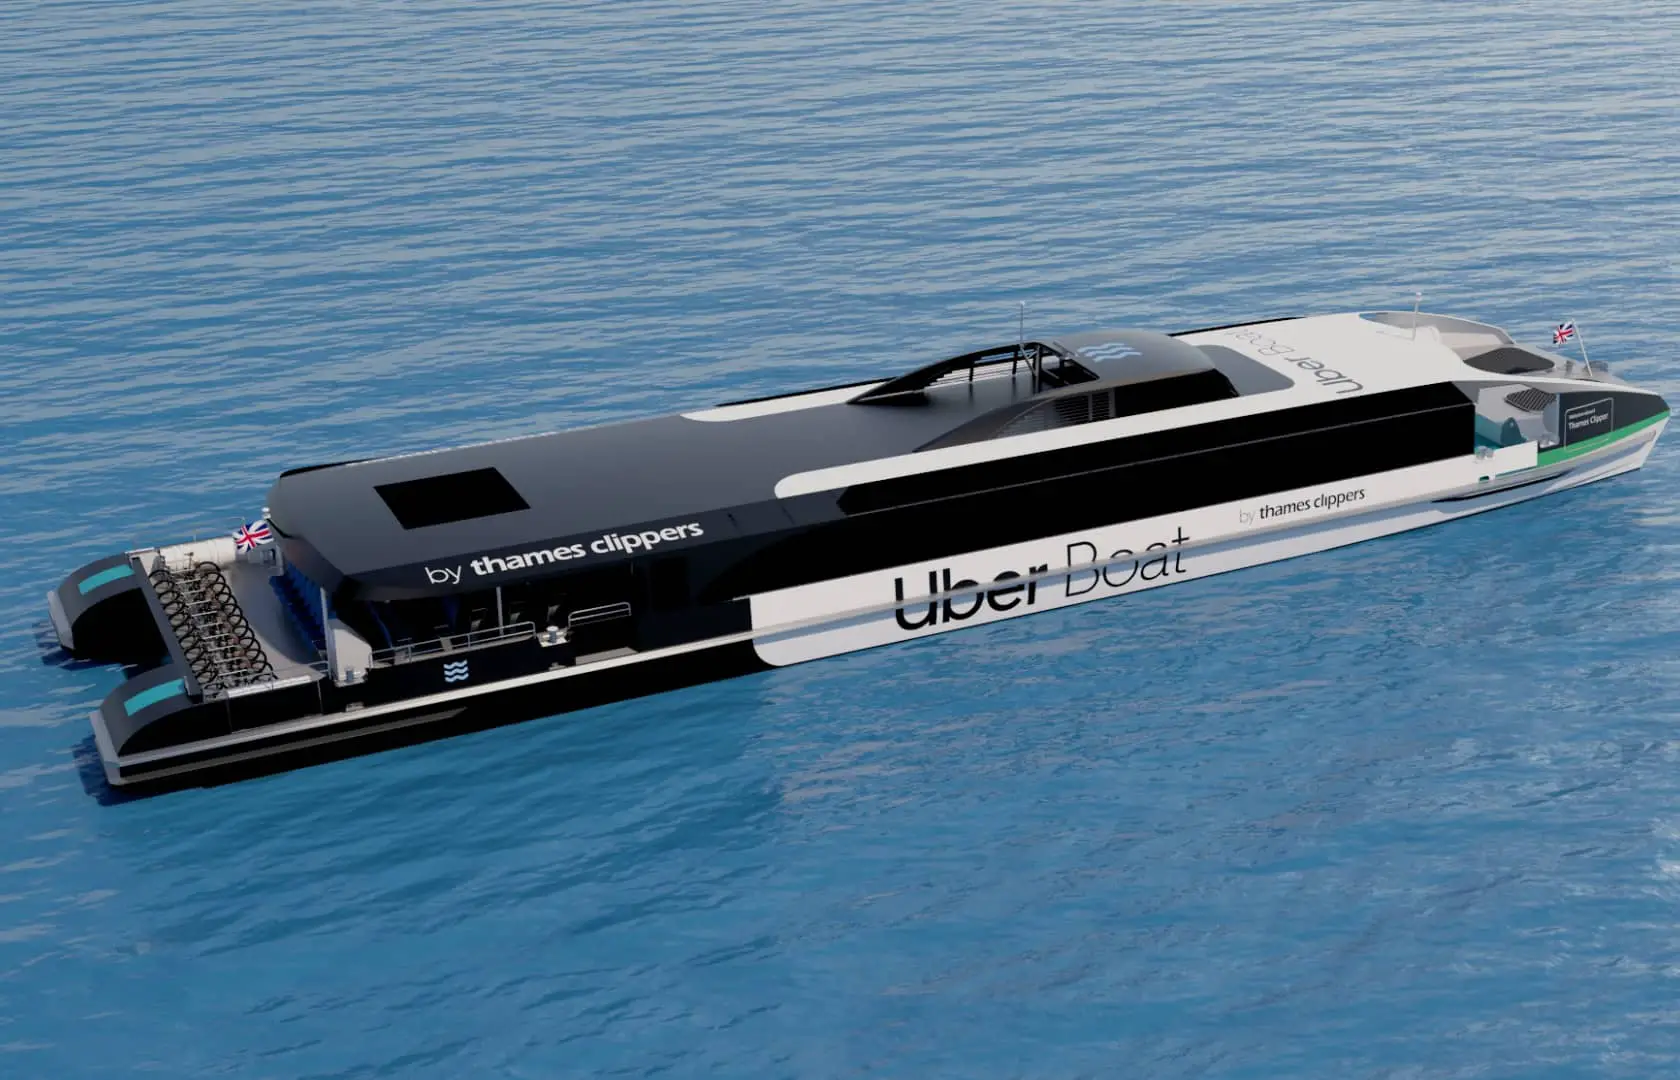 Uber Thames Clipper boat